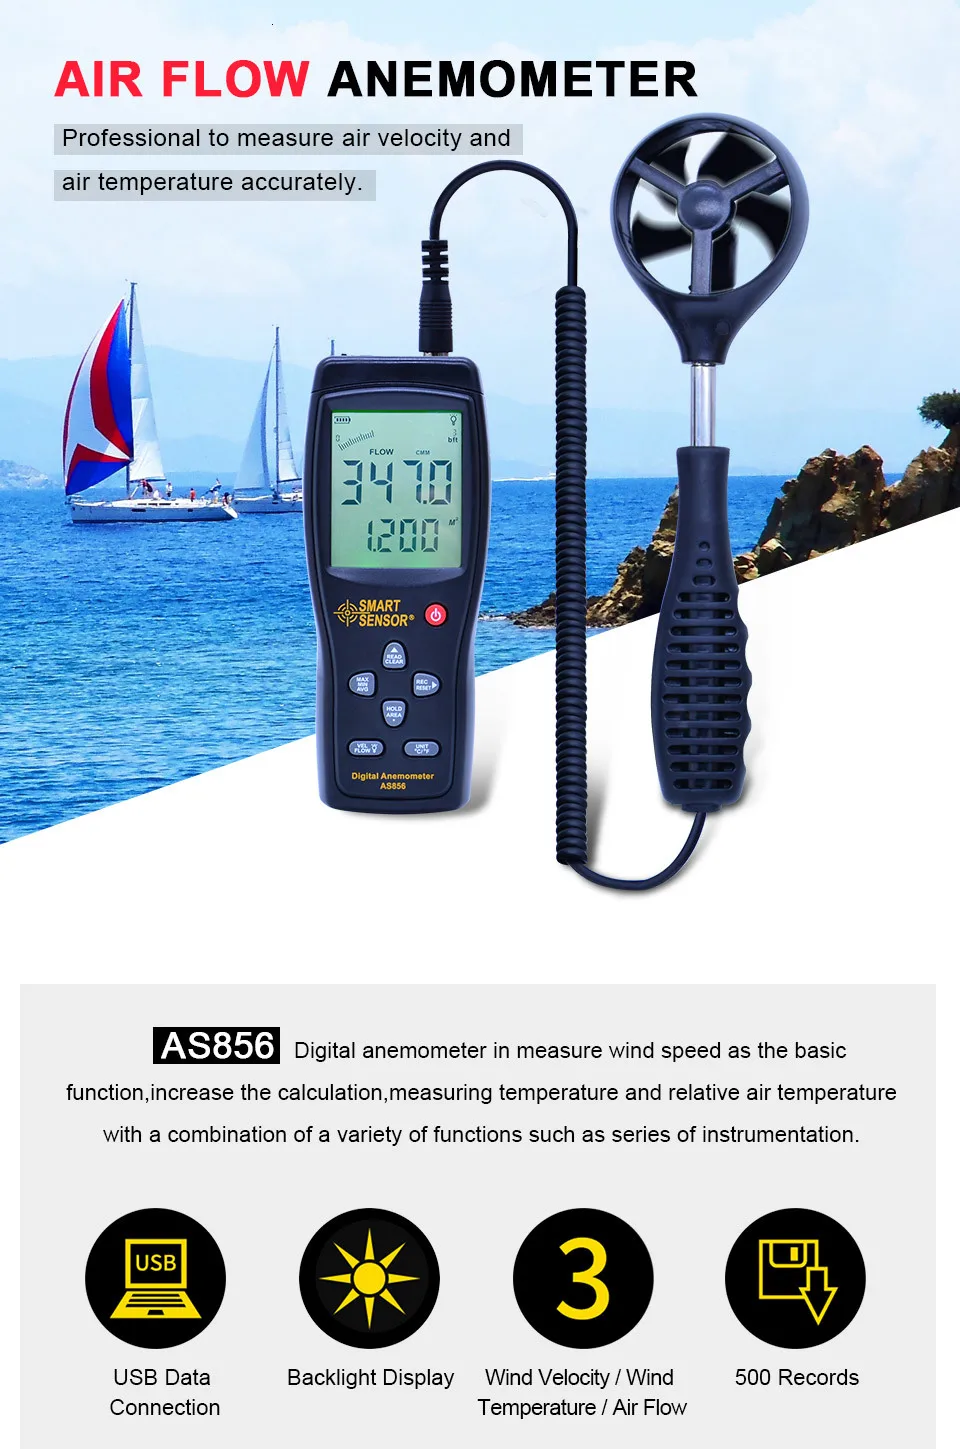 AS856 раздельный Анемометр, измеритель скорости ветра, цифровой тахометр с ЖК-подсветкой, расходомер воздуха, измерение температуры, usb-подключение для передачи данных